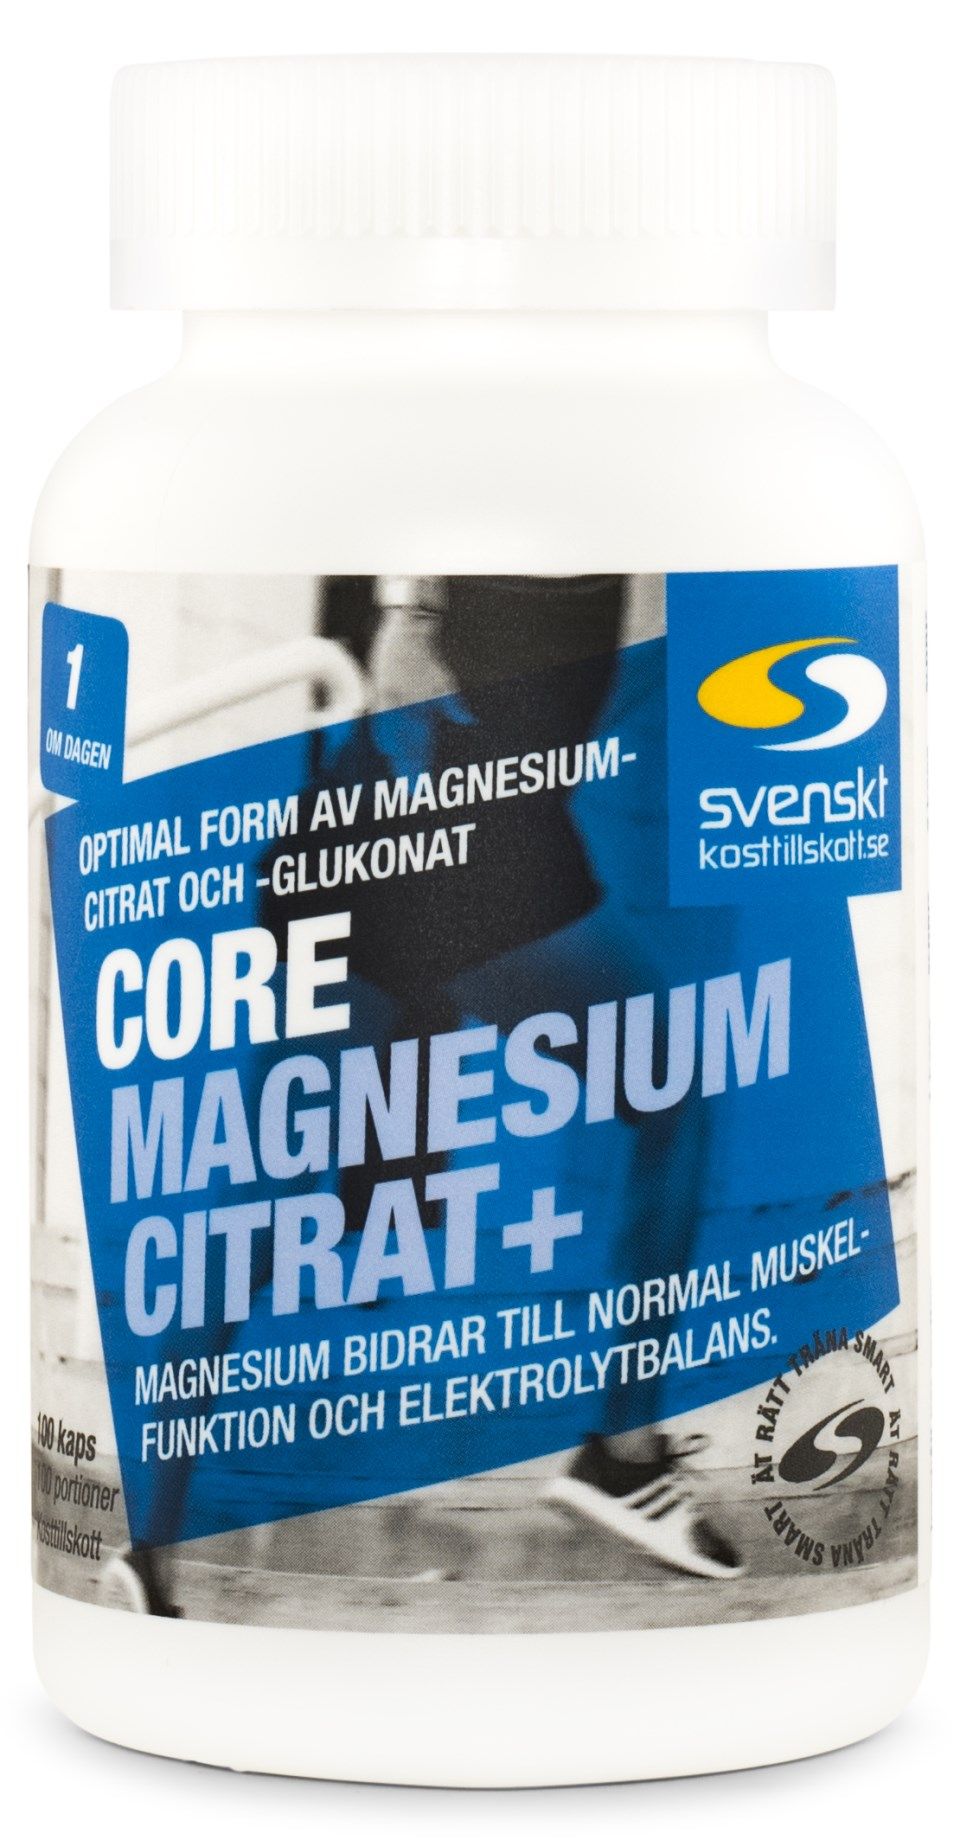 Magnesium - De 10 bästa valen testade och presenterade